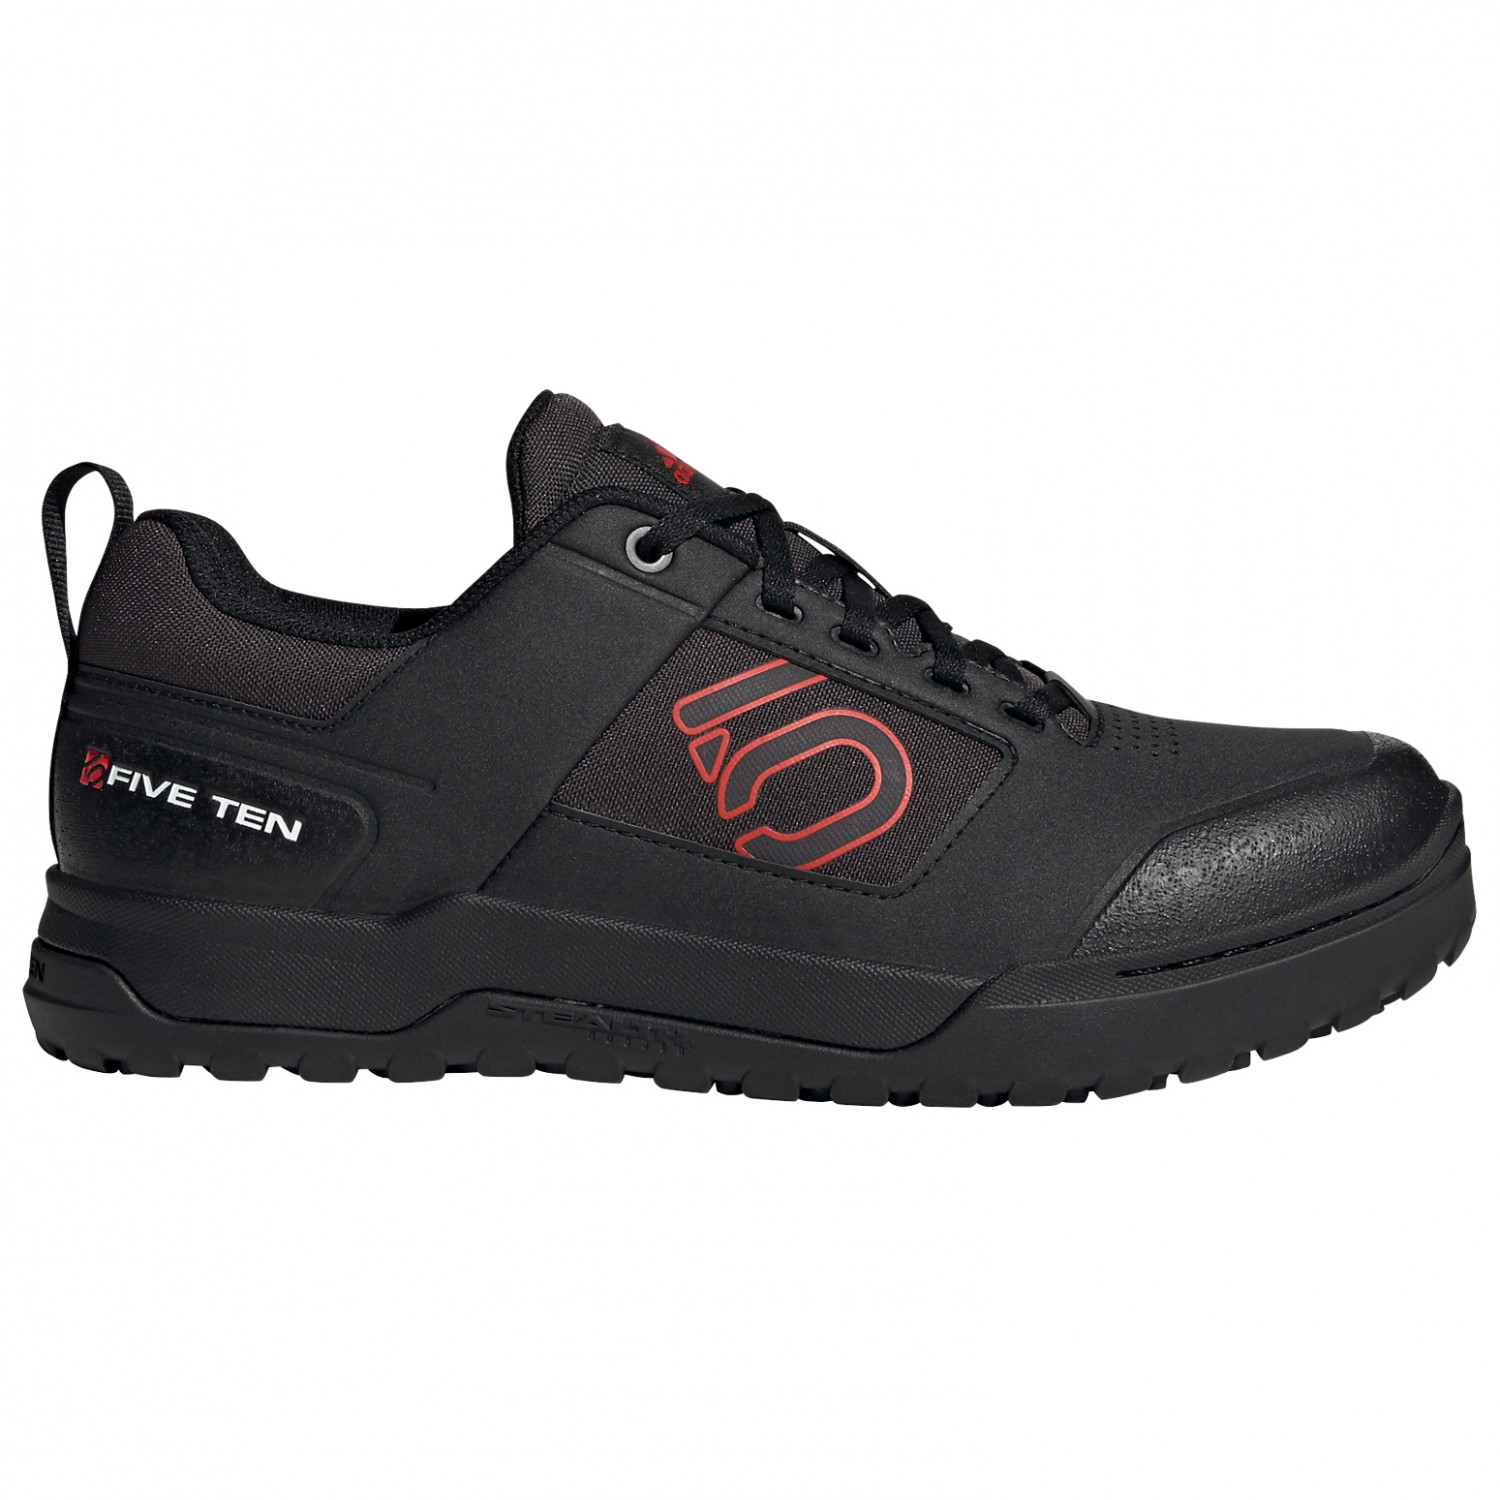 Велосипедная обувь Five Ten Impact Pro, цвет Core Black/Red/Ftwr White картридж cactus cs tk5150bk 12000 стр черный